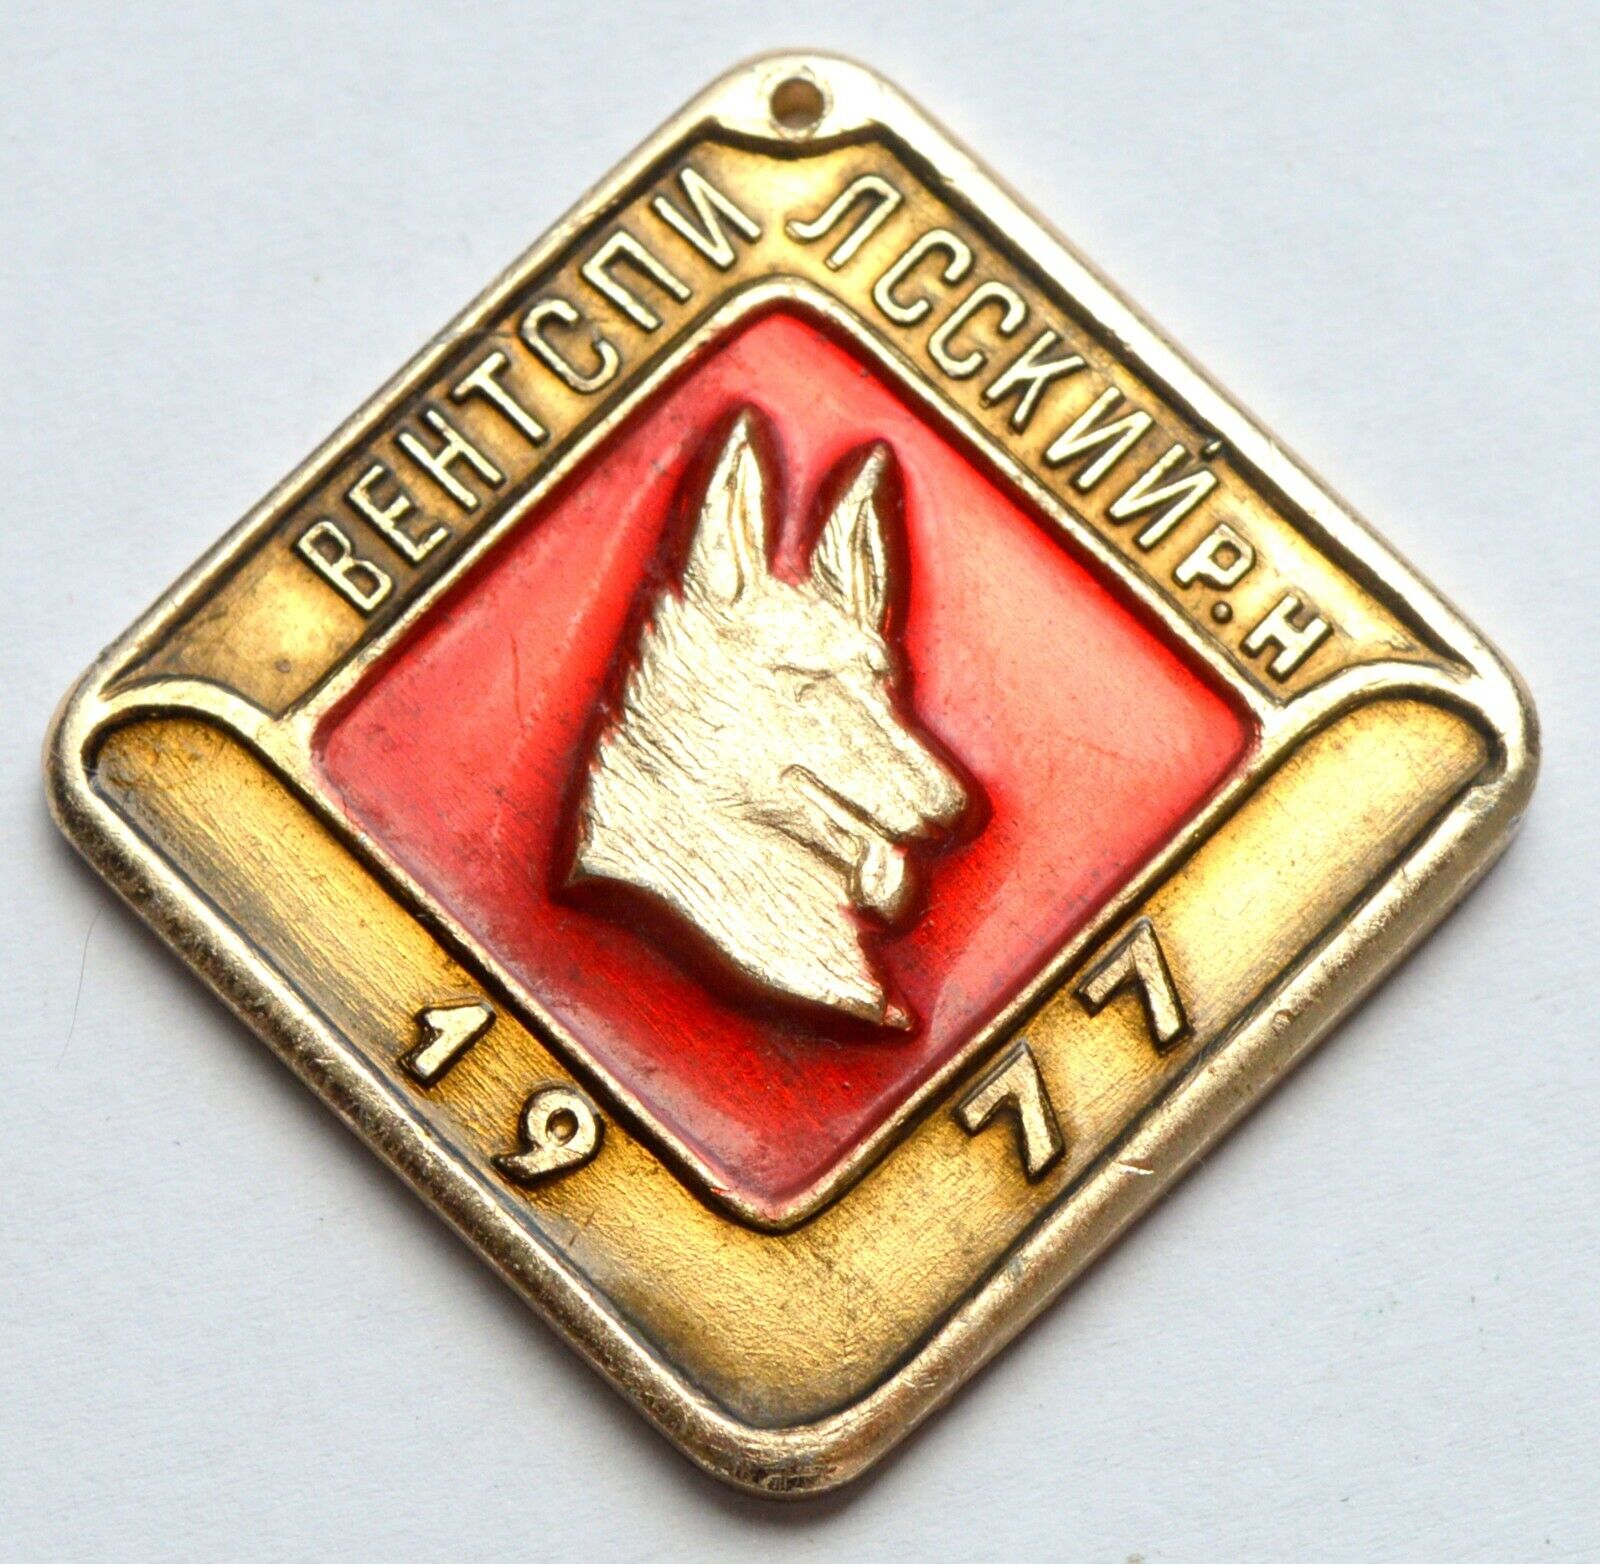 USSR SOVIET RUSSIA LATVIA DOG TAG MEDAL VENTSPILS 1977 MEDAL TOKEN